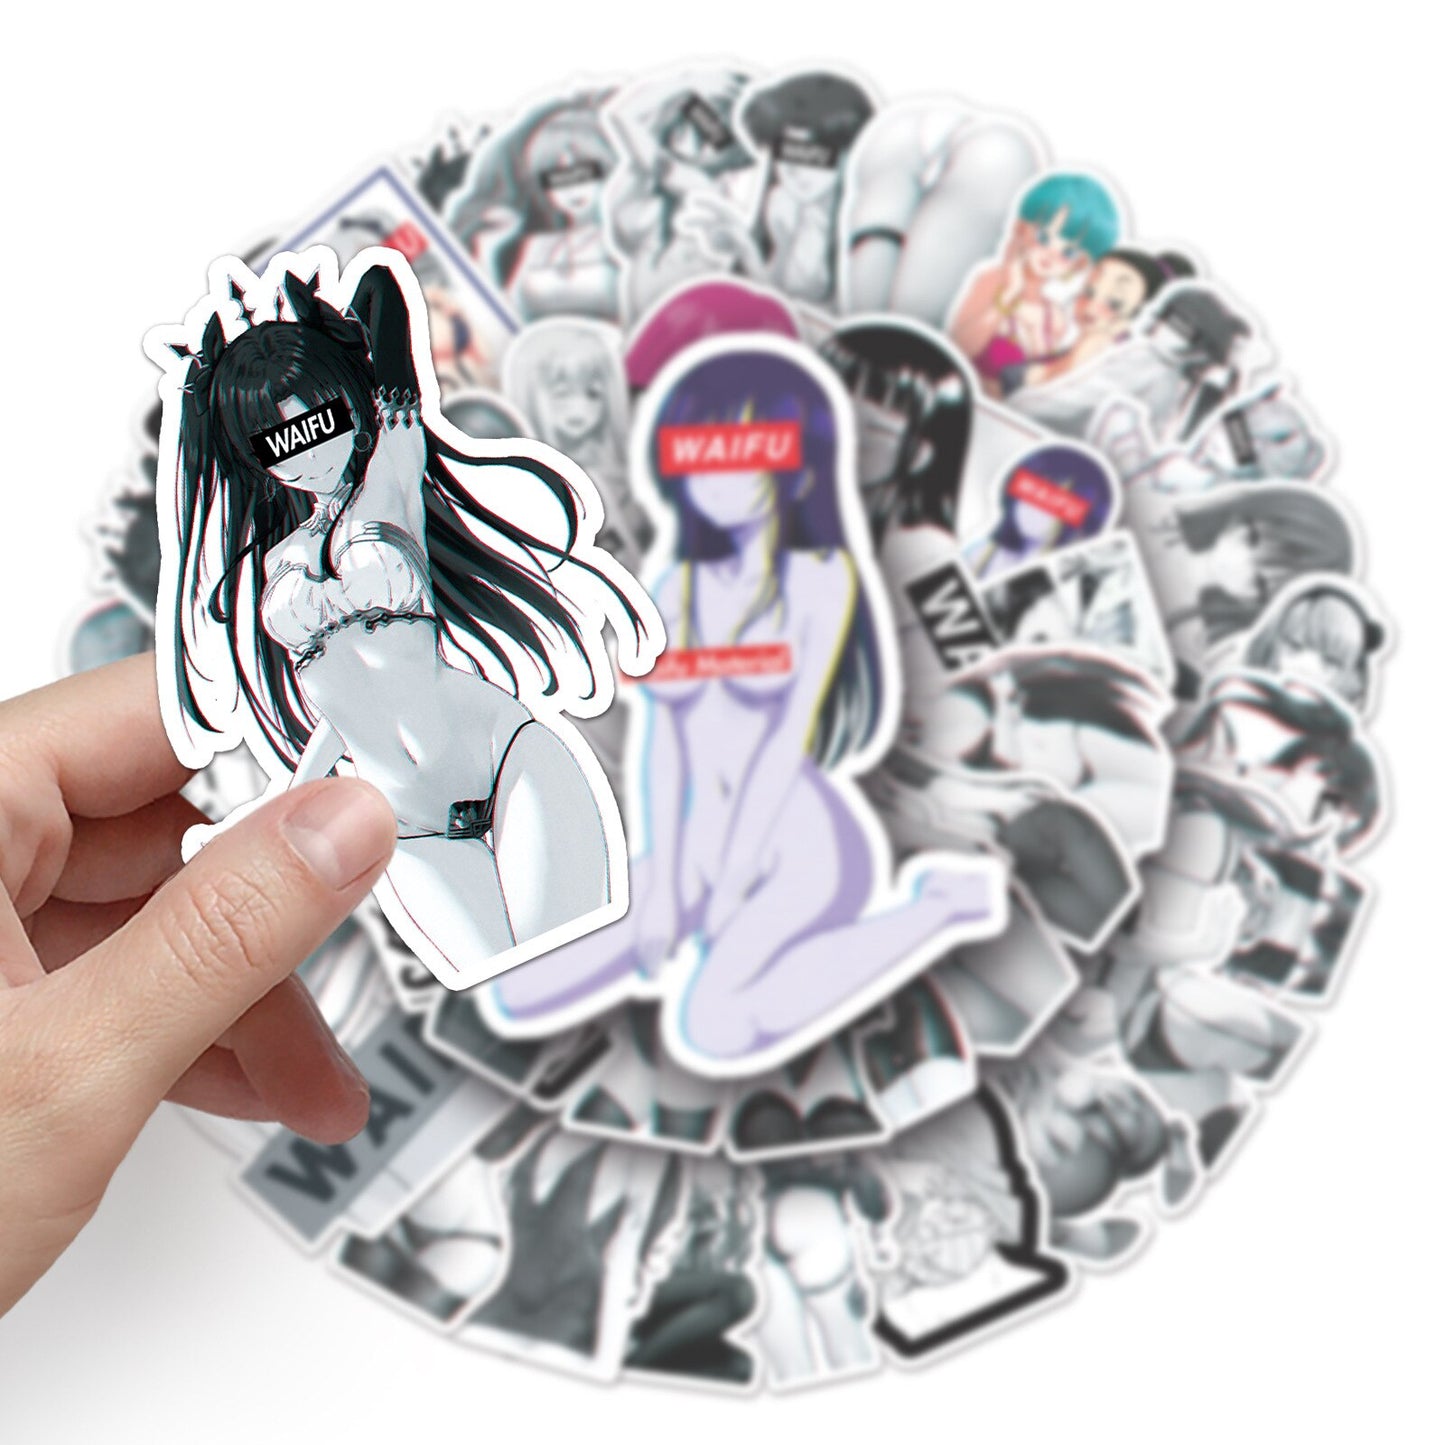 10/30/50Pcs Stickers Anime Sexy Waifu Pinup Girl Bunny Suitcase Laptop Sticker Adults Girls Otaku